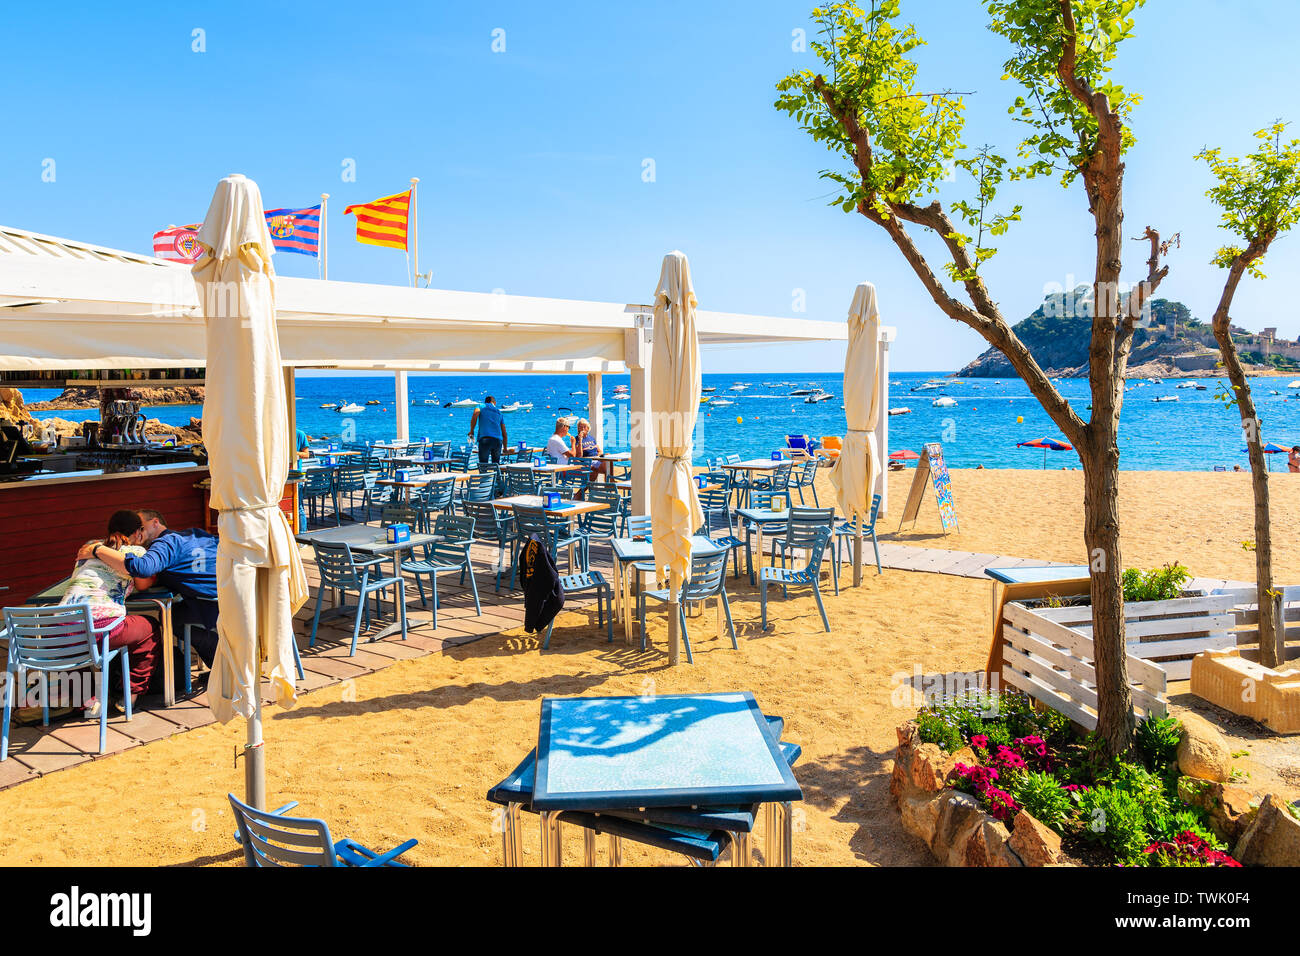 TOSSA DE MAR, Spagna - giu 3, 2019: Persone a pranzo nel ristorante sulla spiaggia di sabbia in Tossa de Mar città, Costa Brava, Spagna. Foto Stock